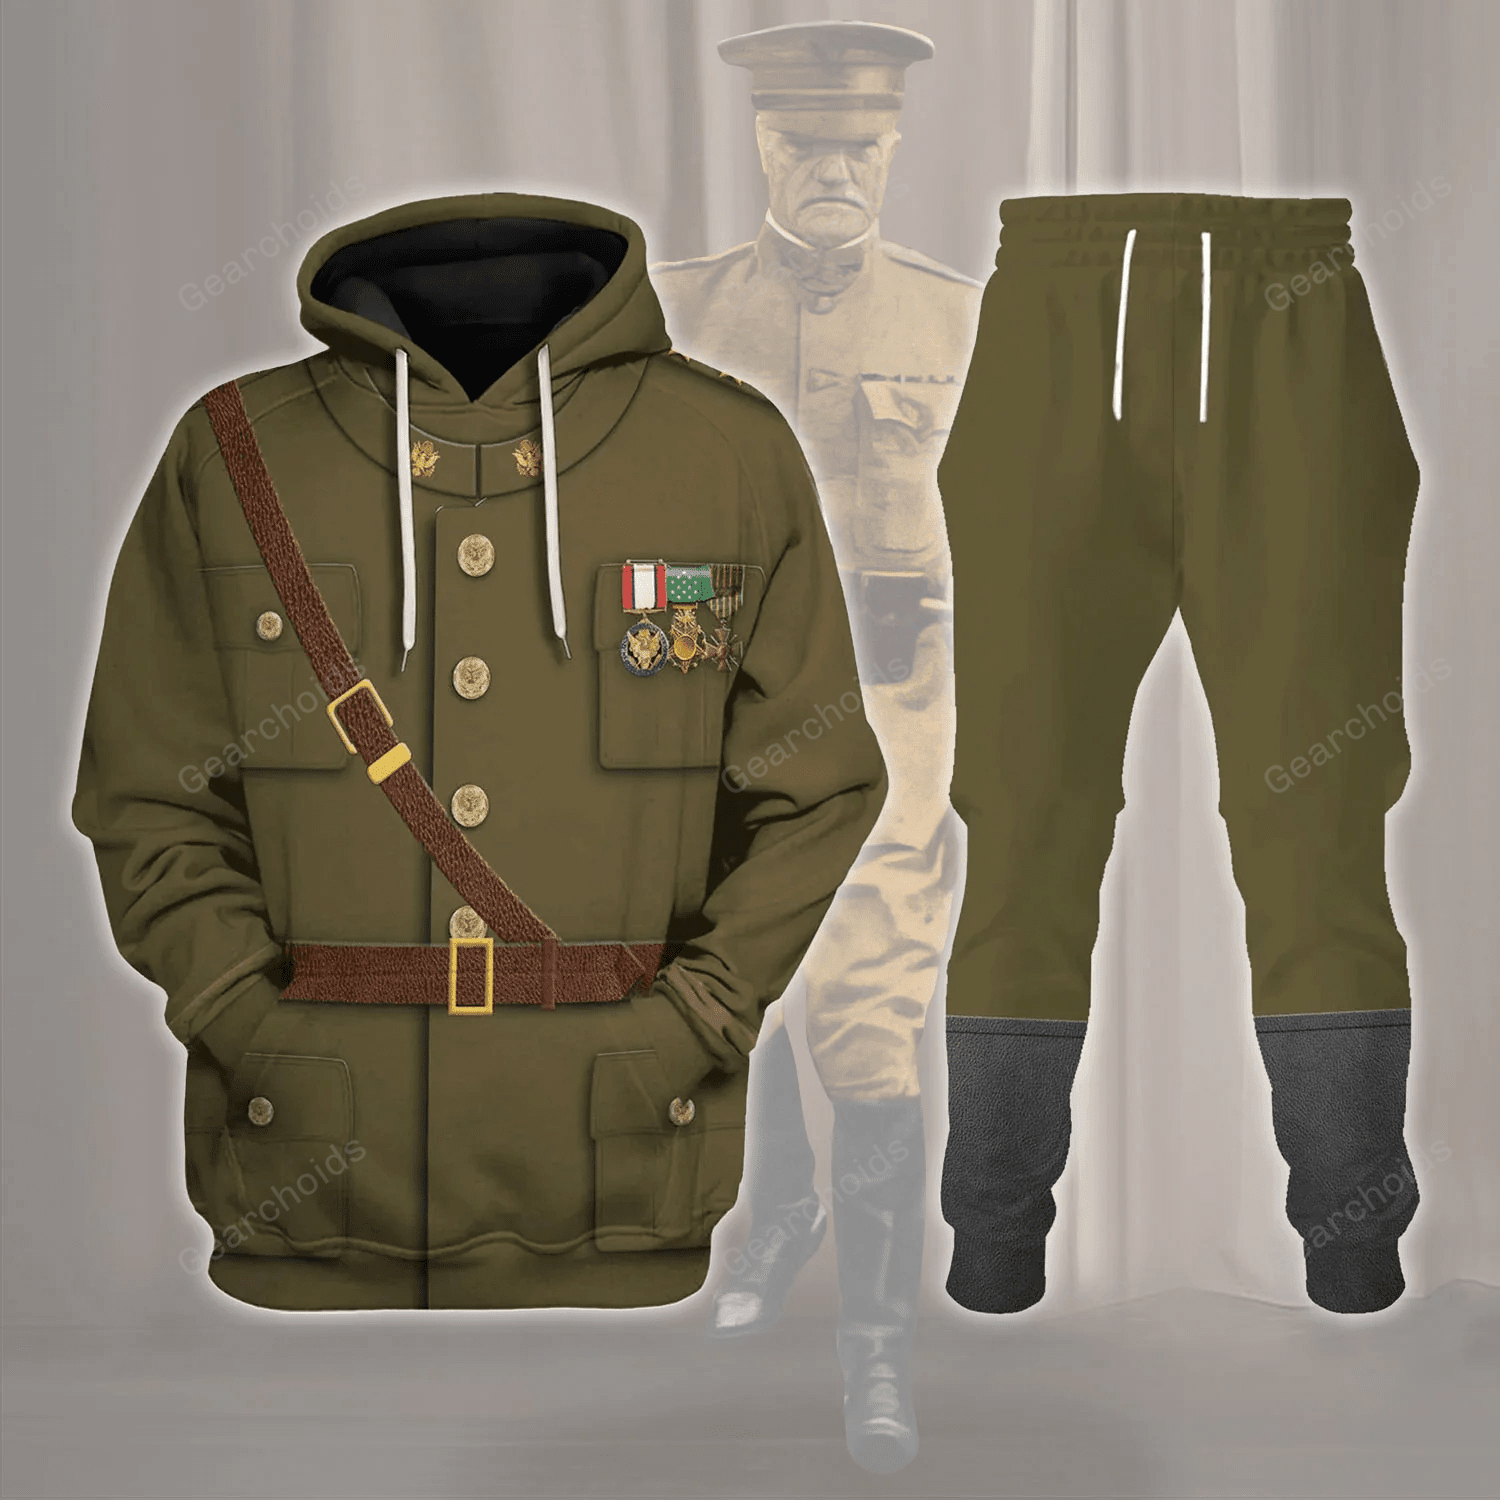 General John J. Jack Pershing Costume Hoodie Sweatshirt Sweatpants